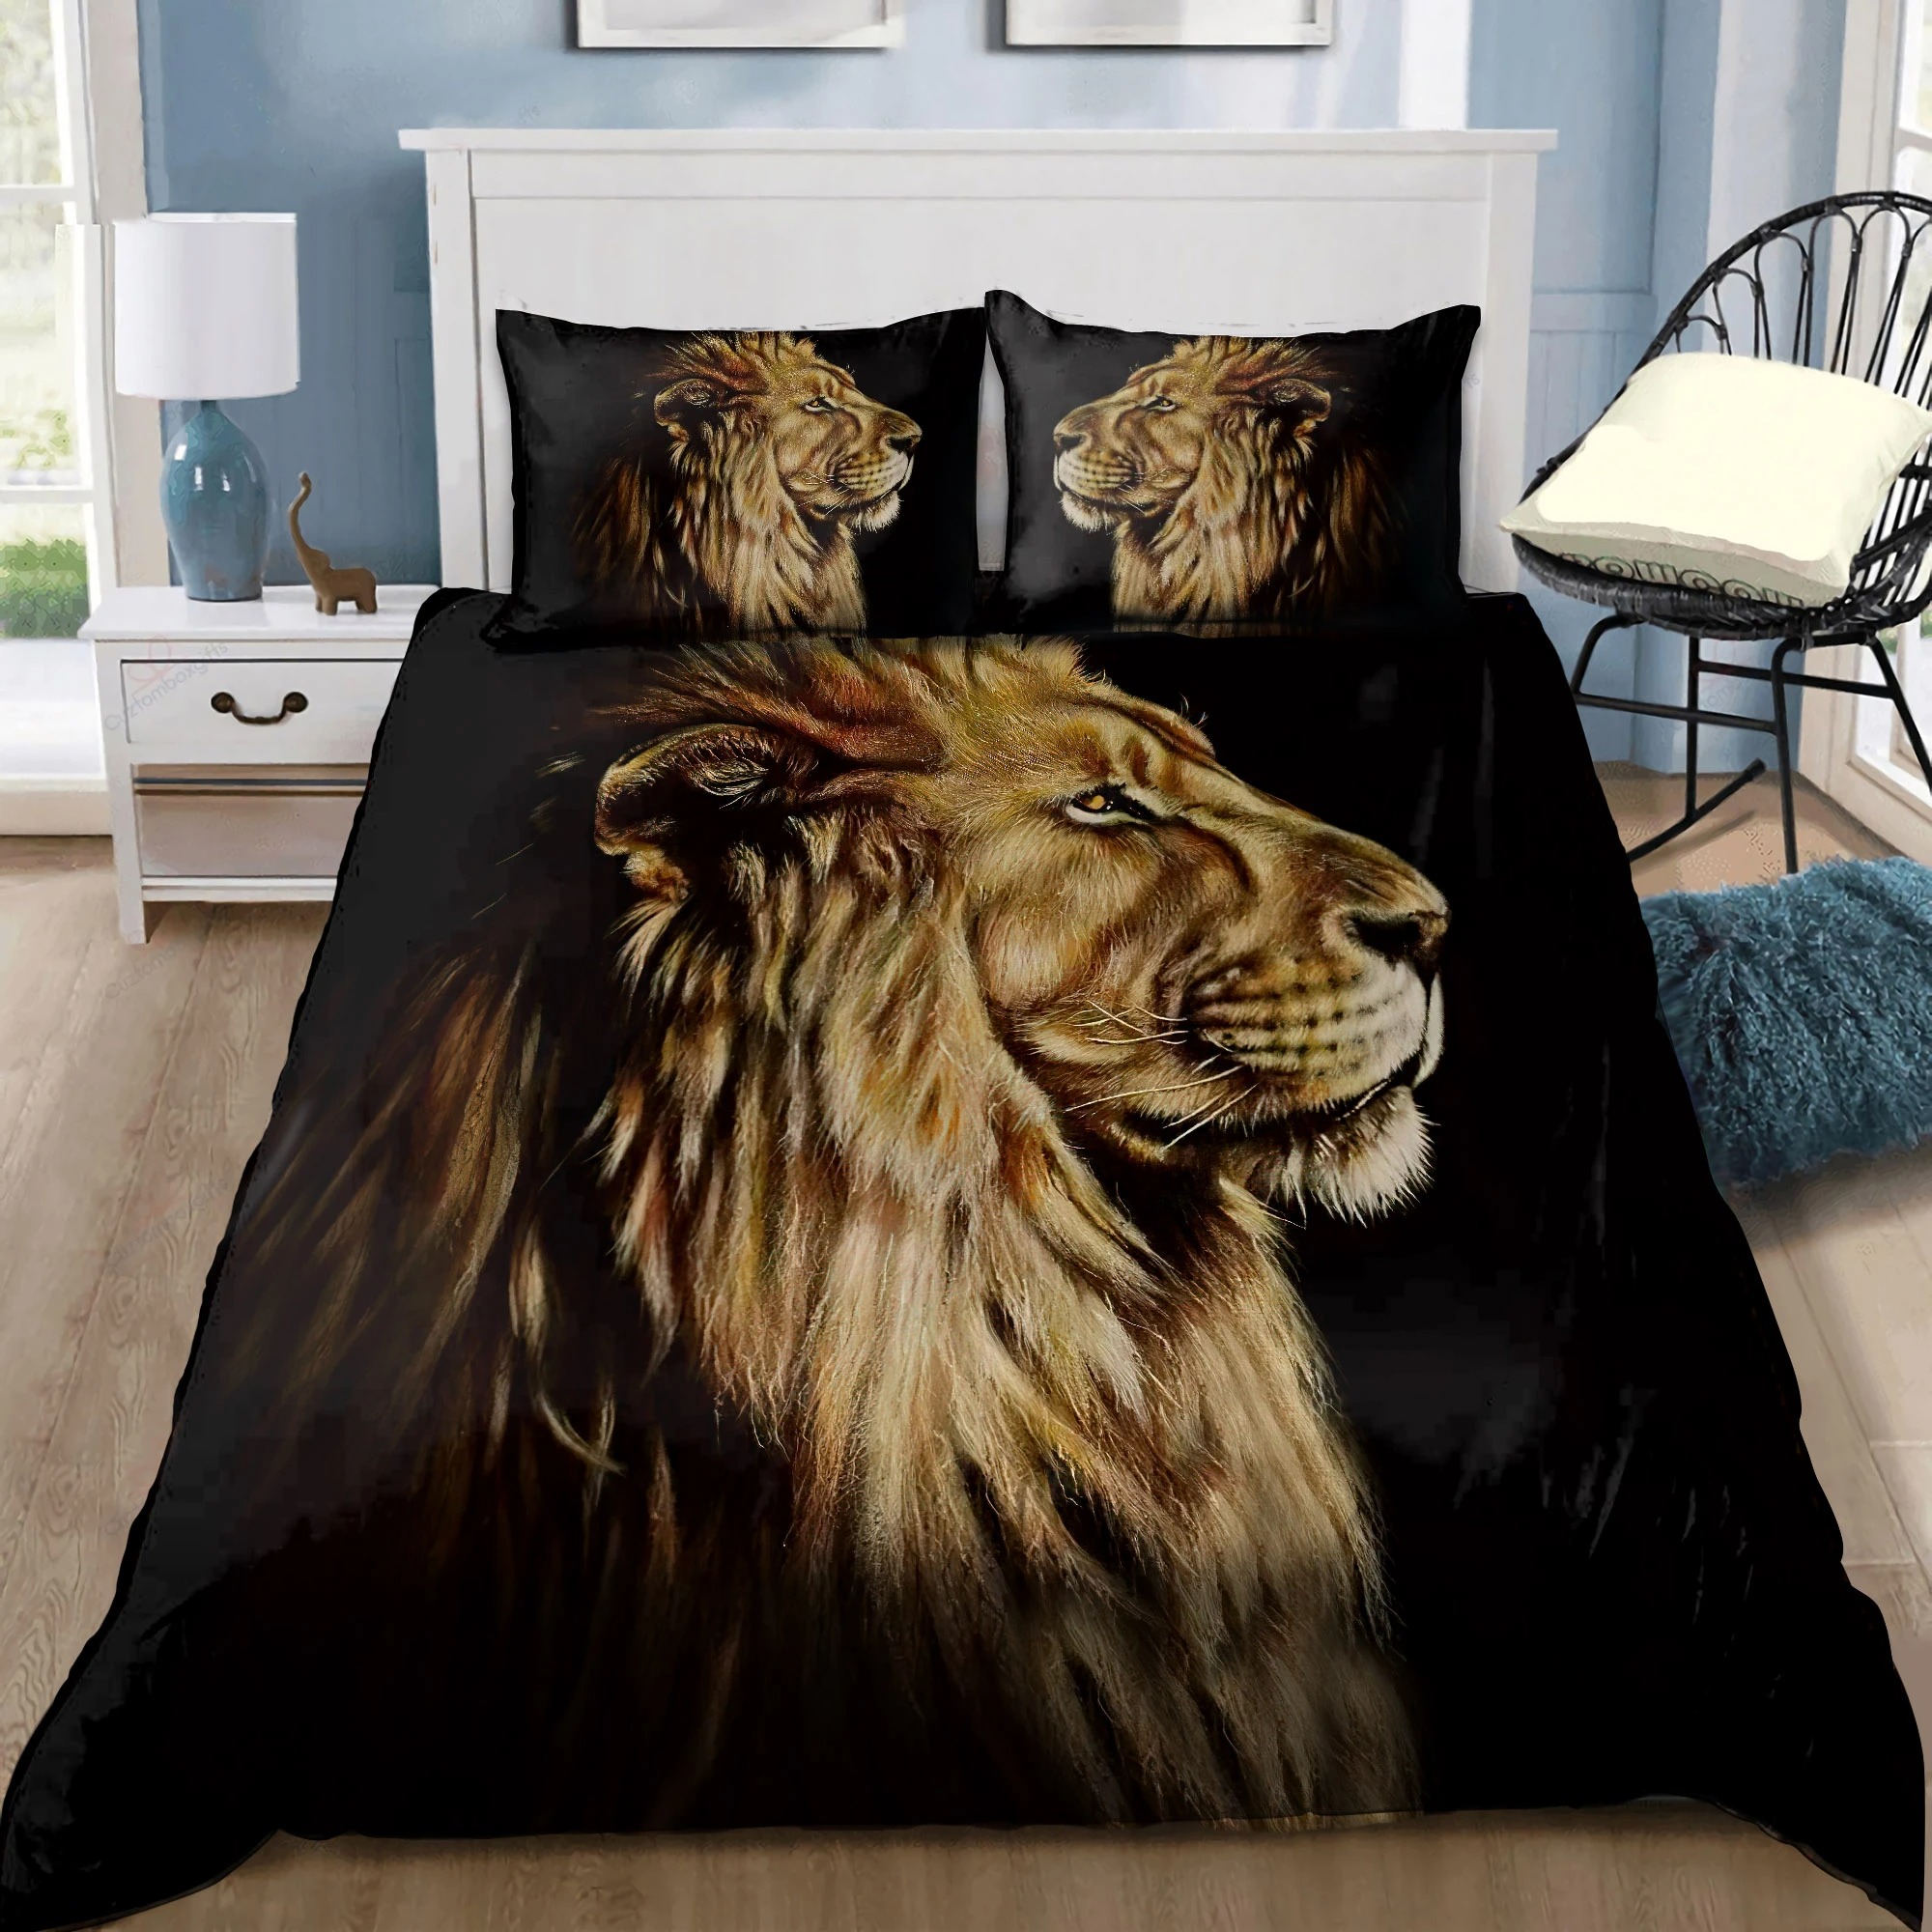 Lion king bedding set2